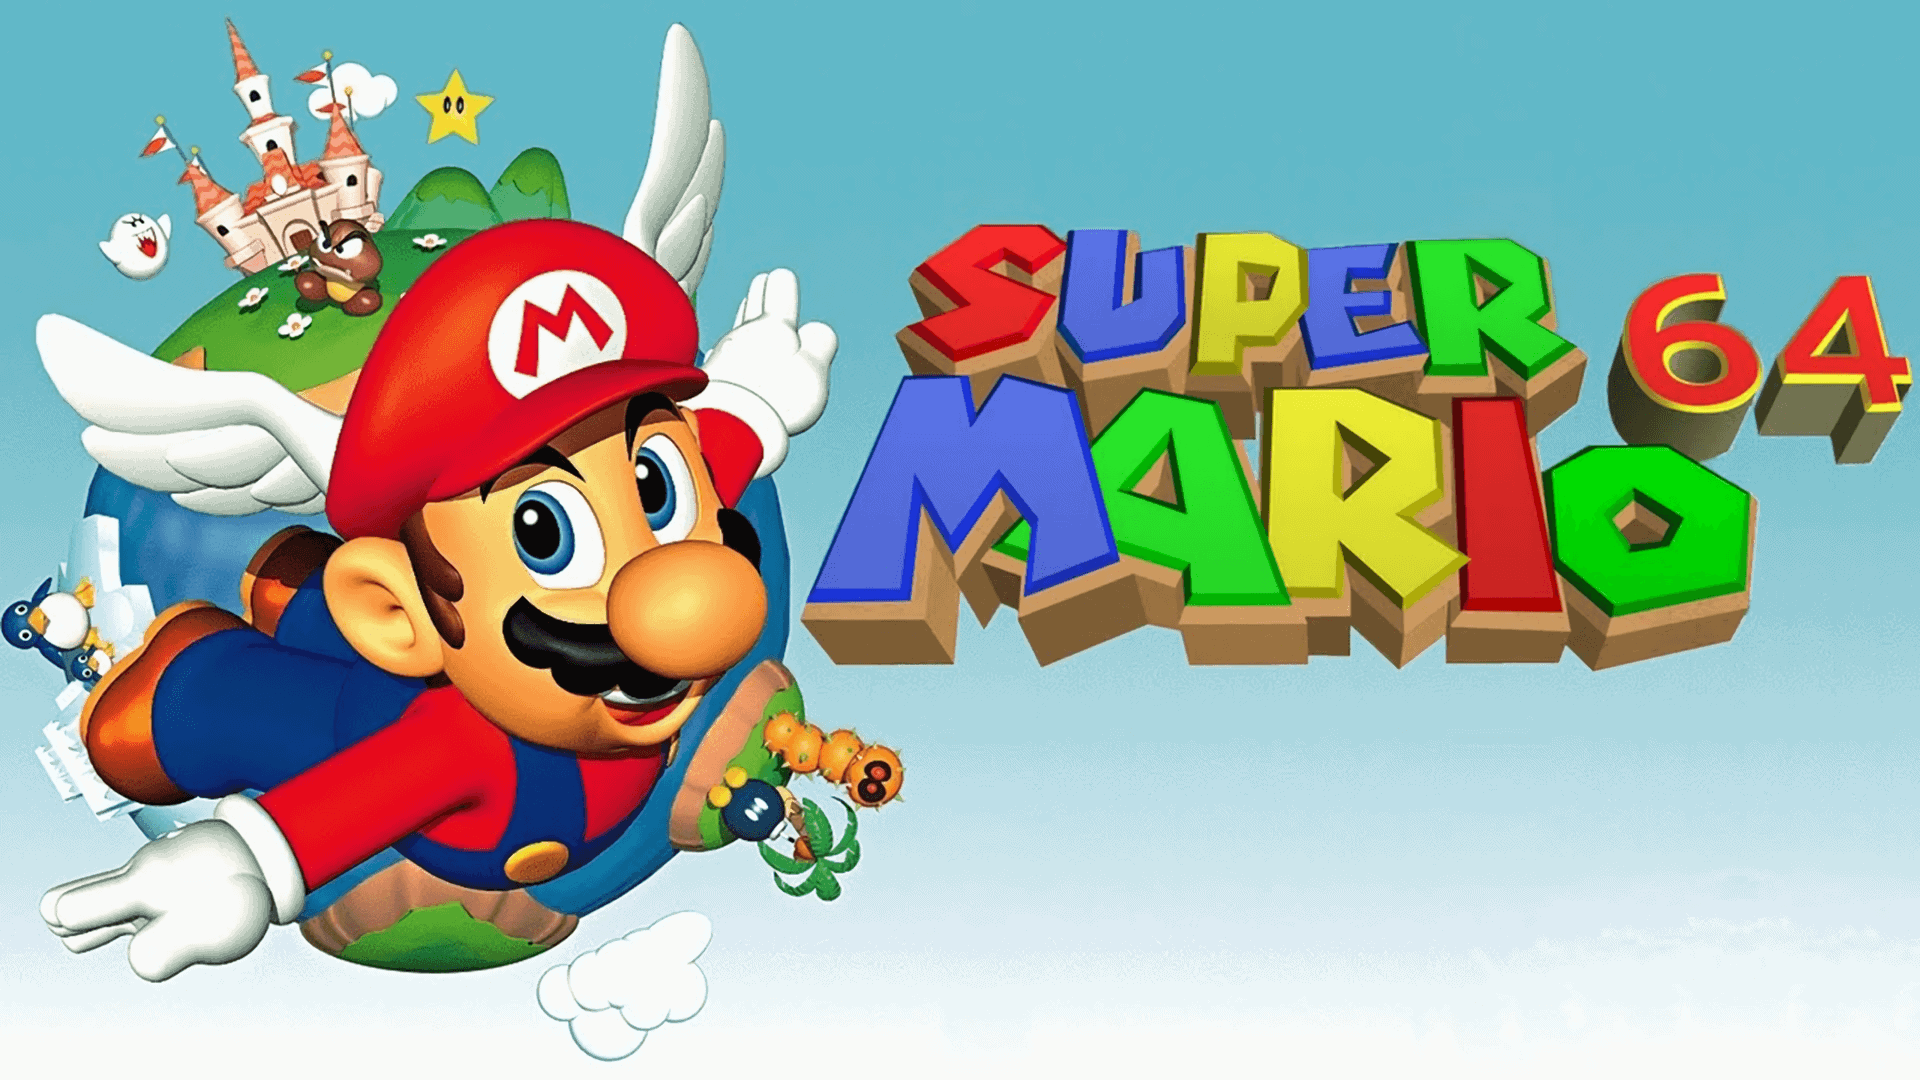 Best Super Mario Games - Super Mario 64